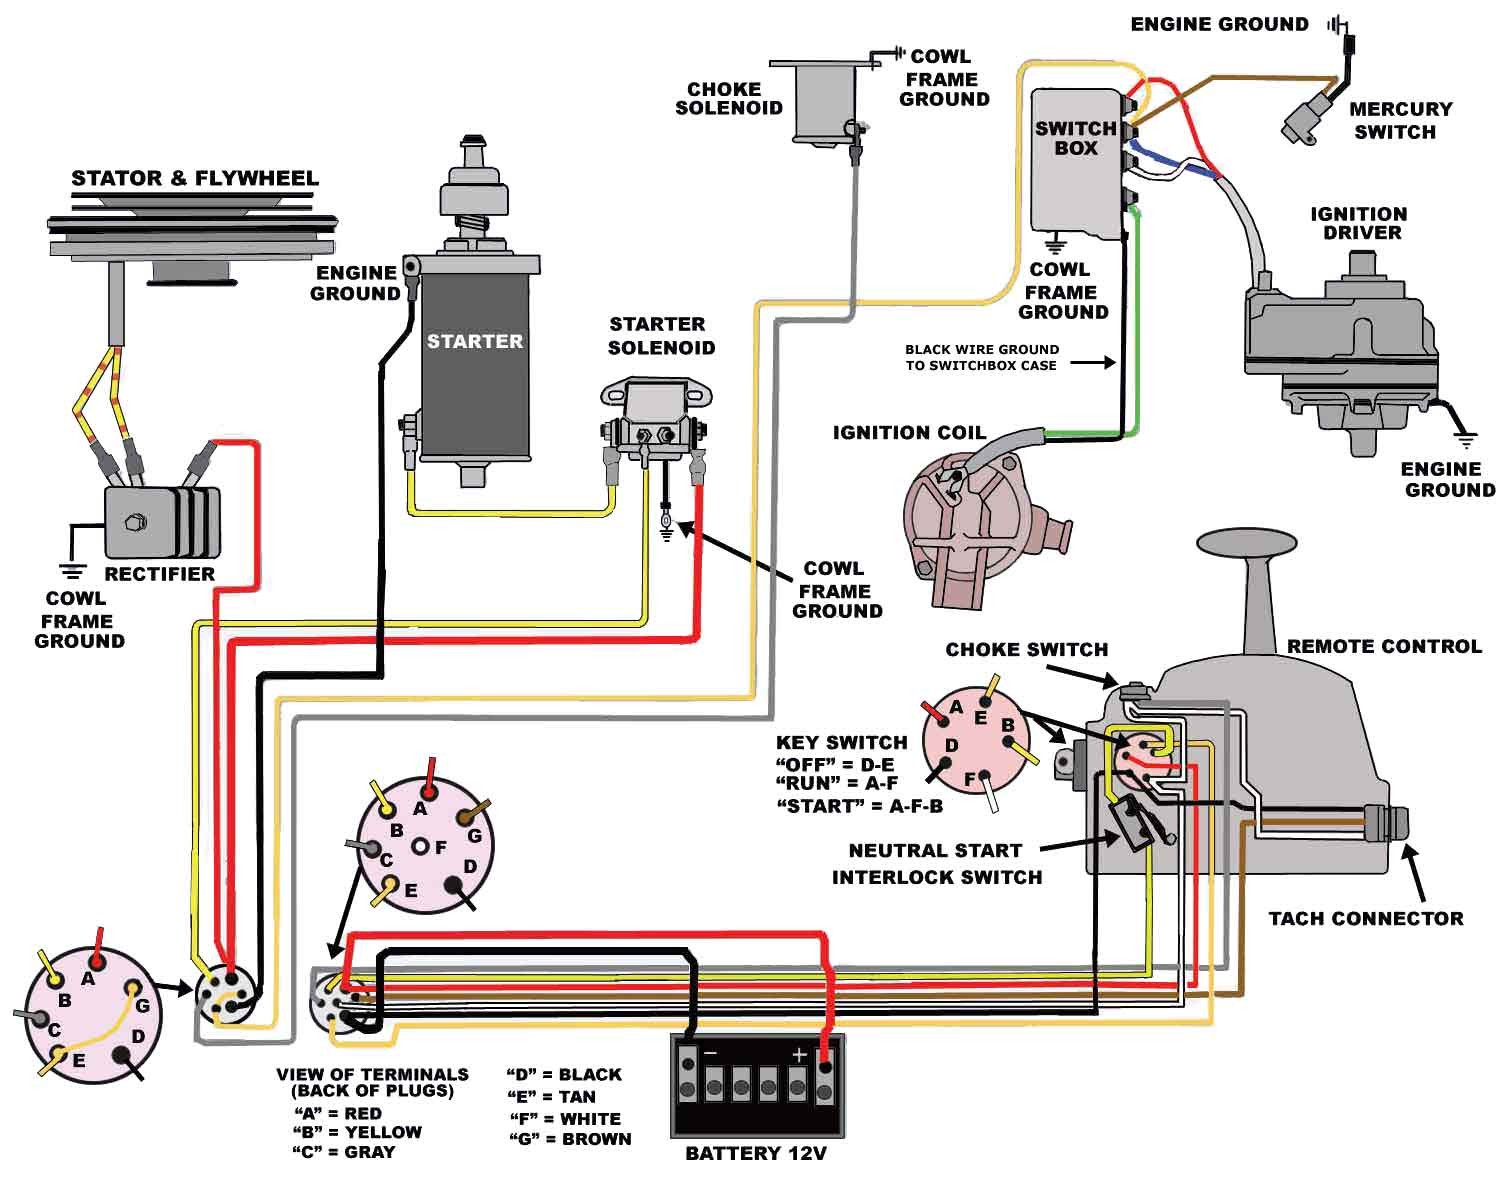 Diesel Engines Wiring Ignition Switch Wiring Diagram Diesel Engine Decoration Ideas Of Diesel Engines Wiring